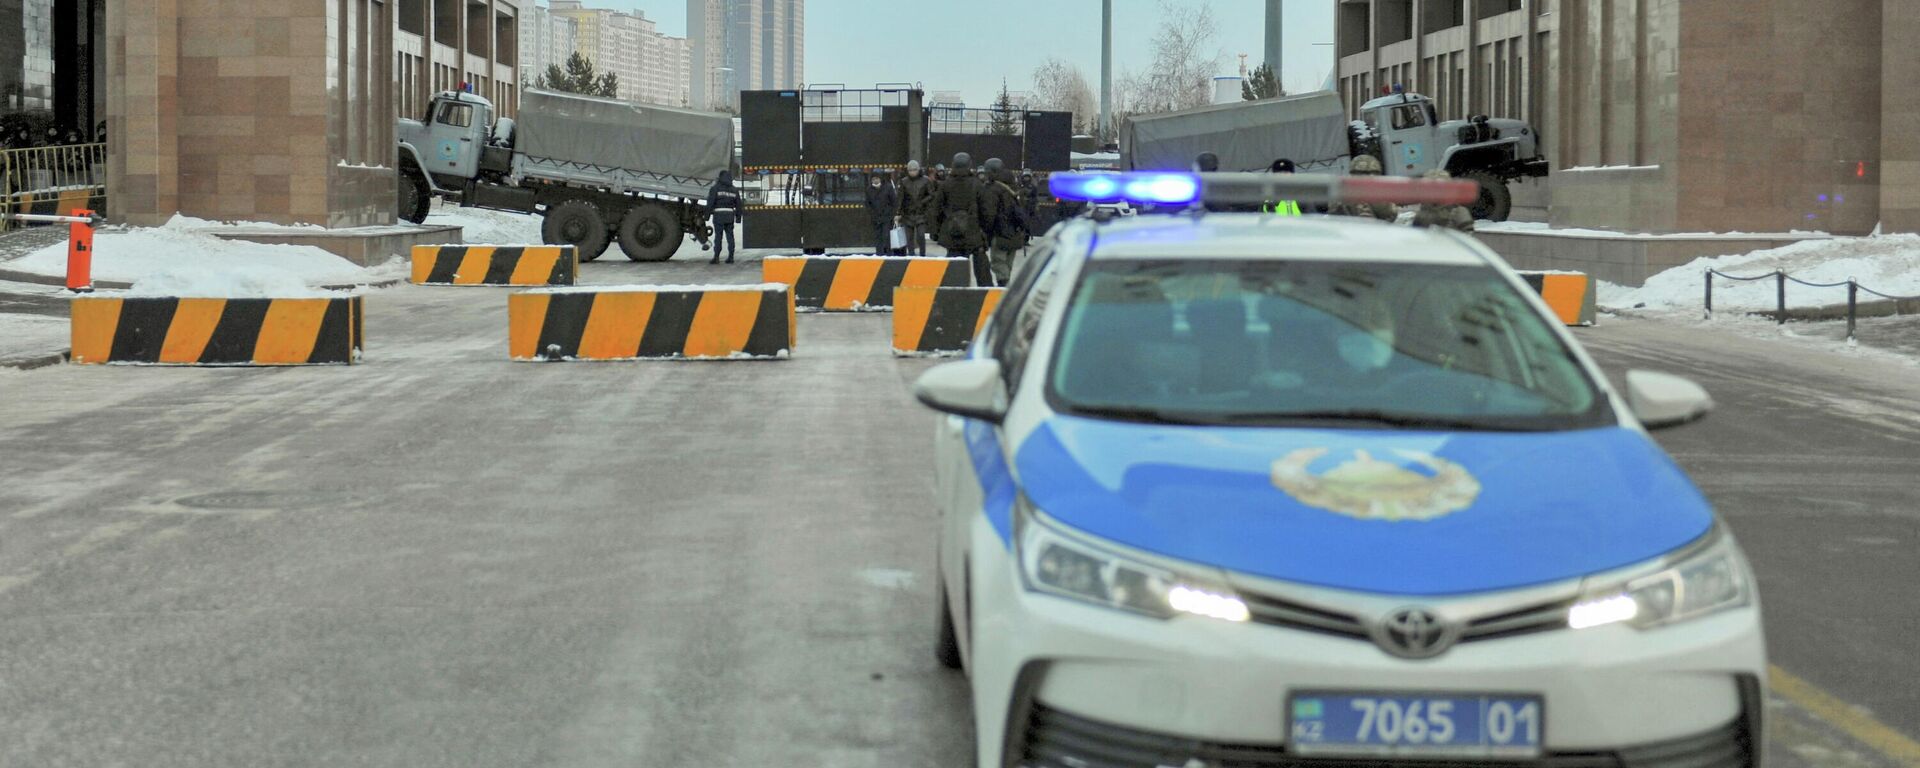 Policías kazajos bloquean una calle en Nur-Sultan, Kazajistán, el 6 de enero de 2022 - Sputnik Mundo, 1920, 08.01.2022